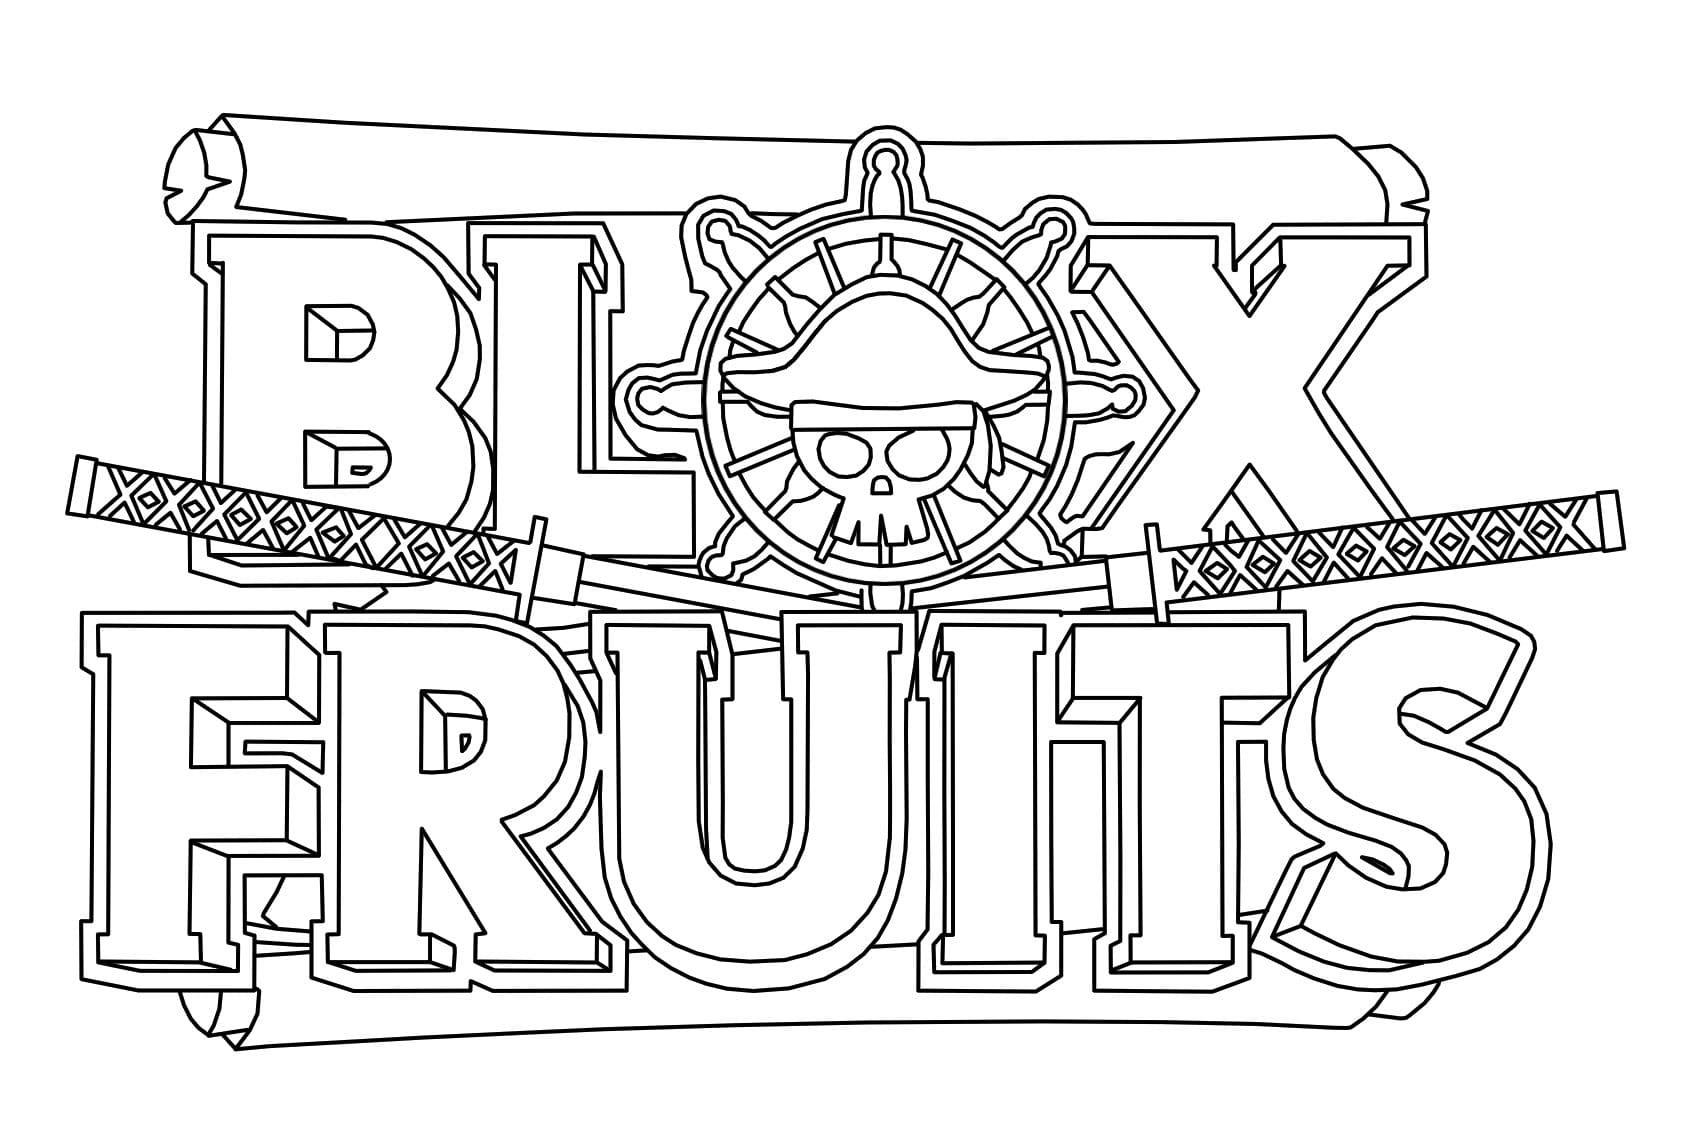 Logotipo da Blox Fruits para colorir